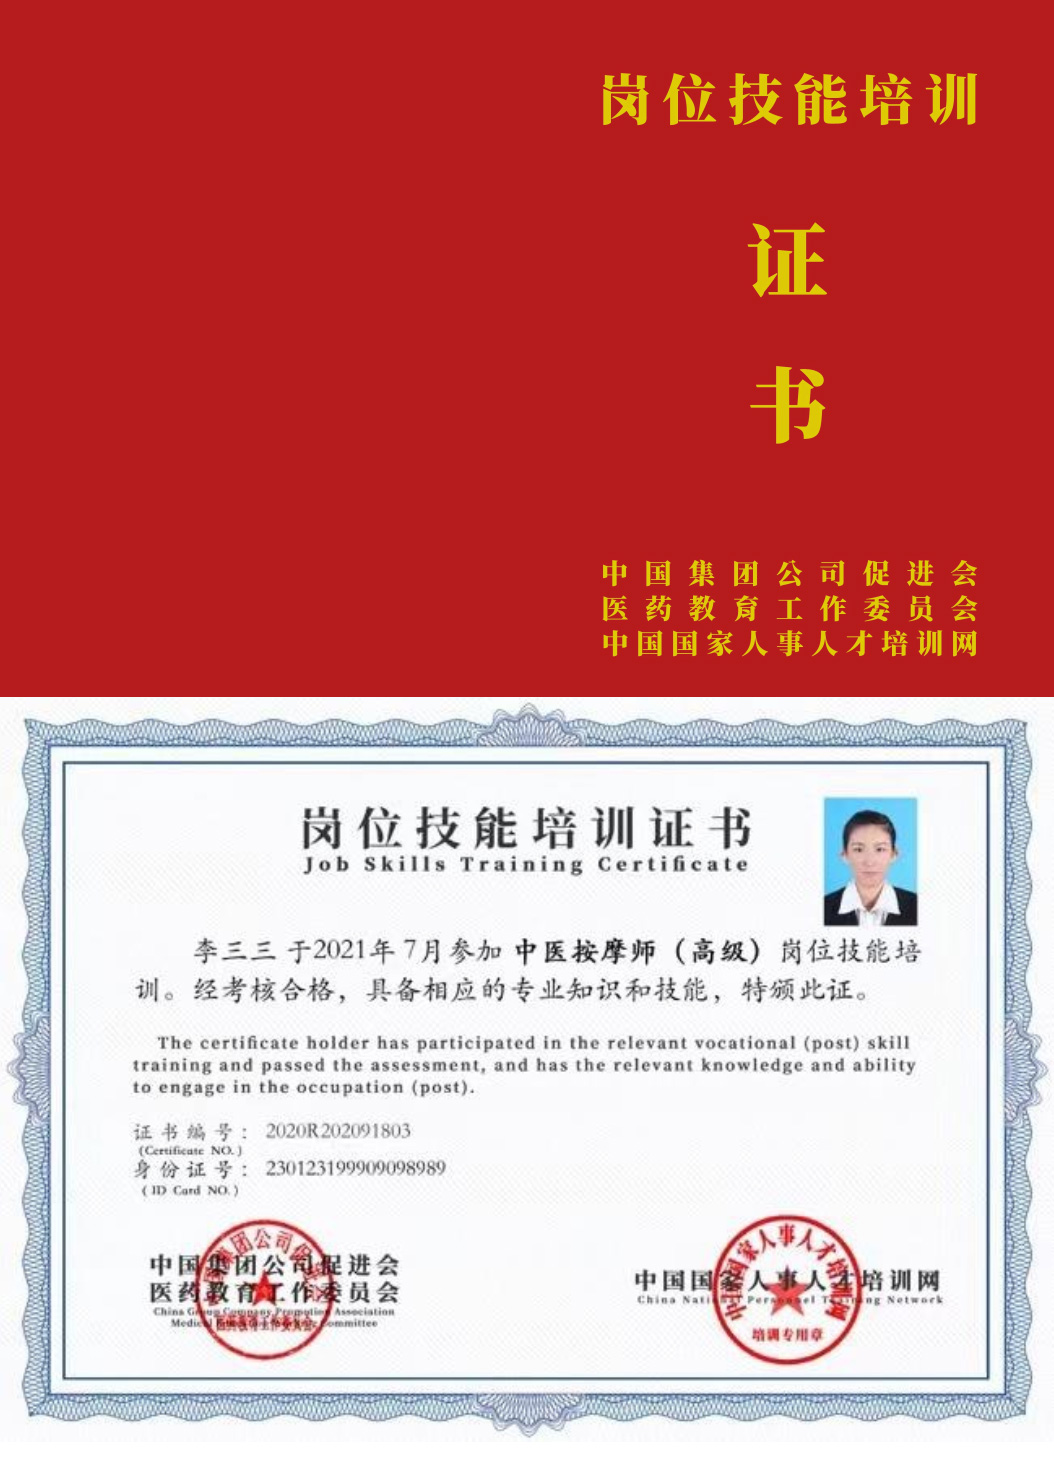 中国国家人事人才培训网 新媒体运营师 岗位技能培训证书